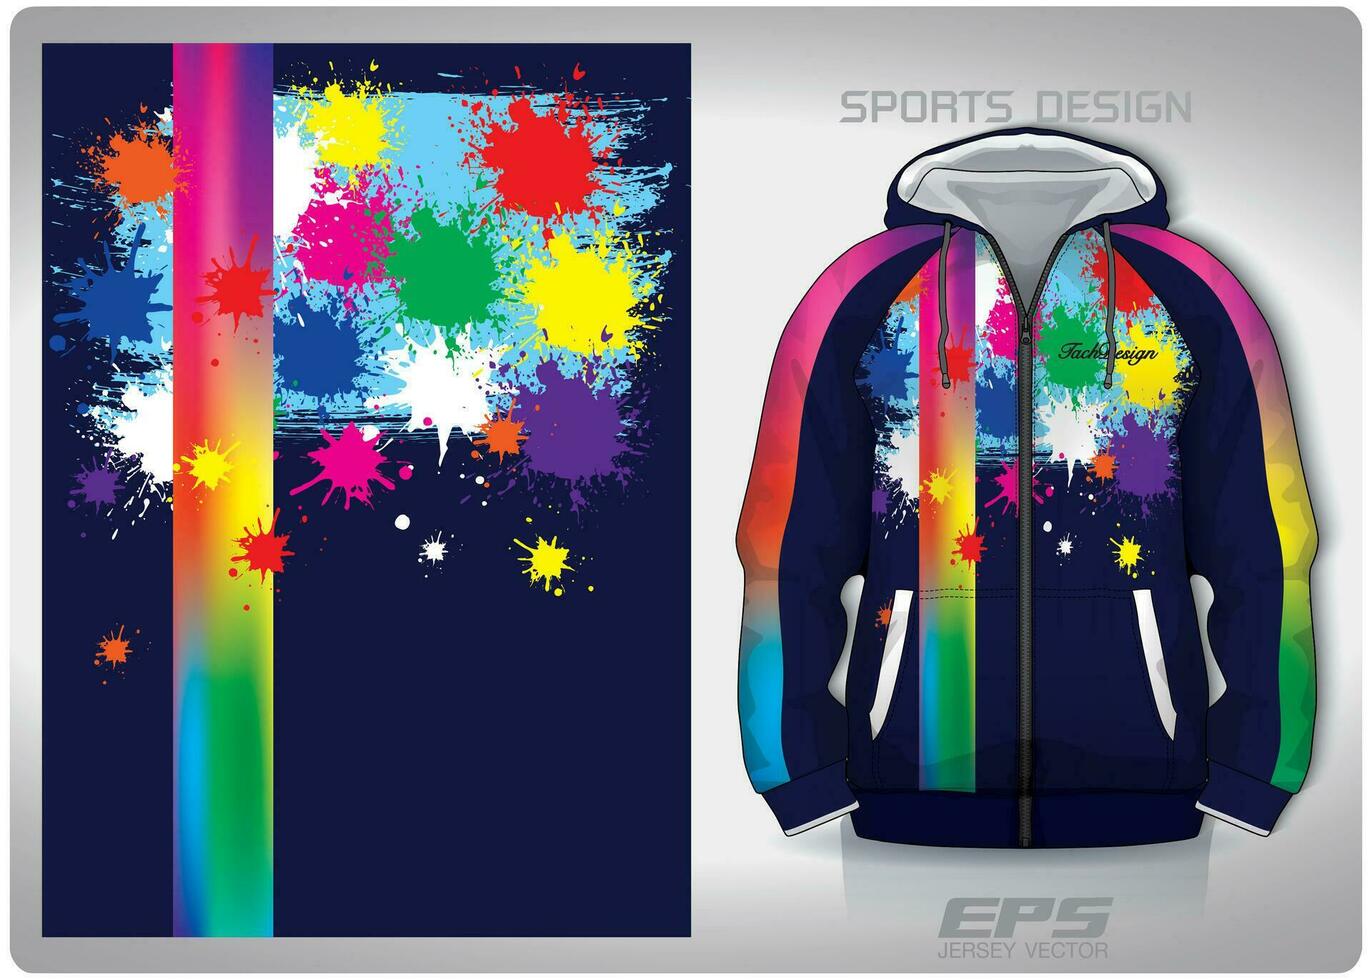 vektor sporter skjorta bakgrund image.rainbow sallad konst mönster design, illustration, textil- bakgrund för sporter lång ärm luvtröja, jersey luvtröja